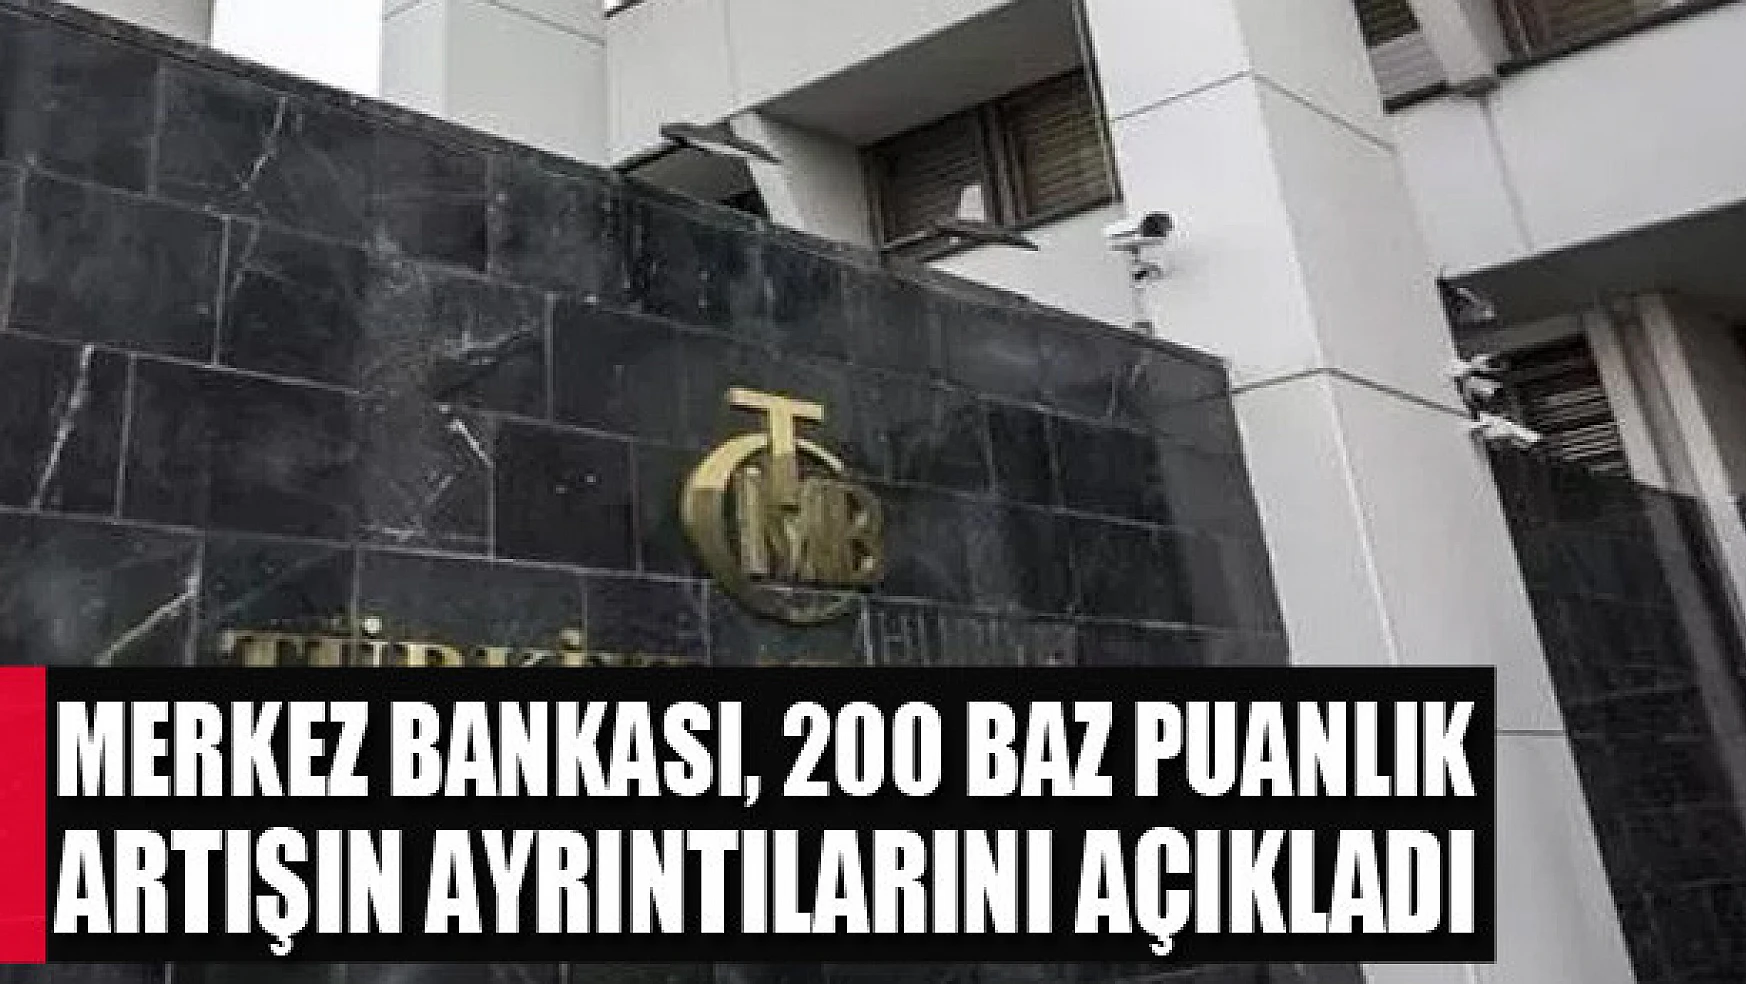 Merkez Bankası, 200 baz puanlık artışın ayrıntılarını açıkladı